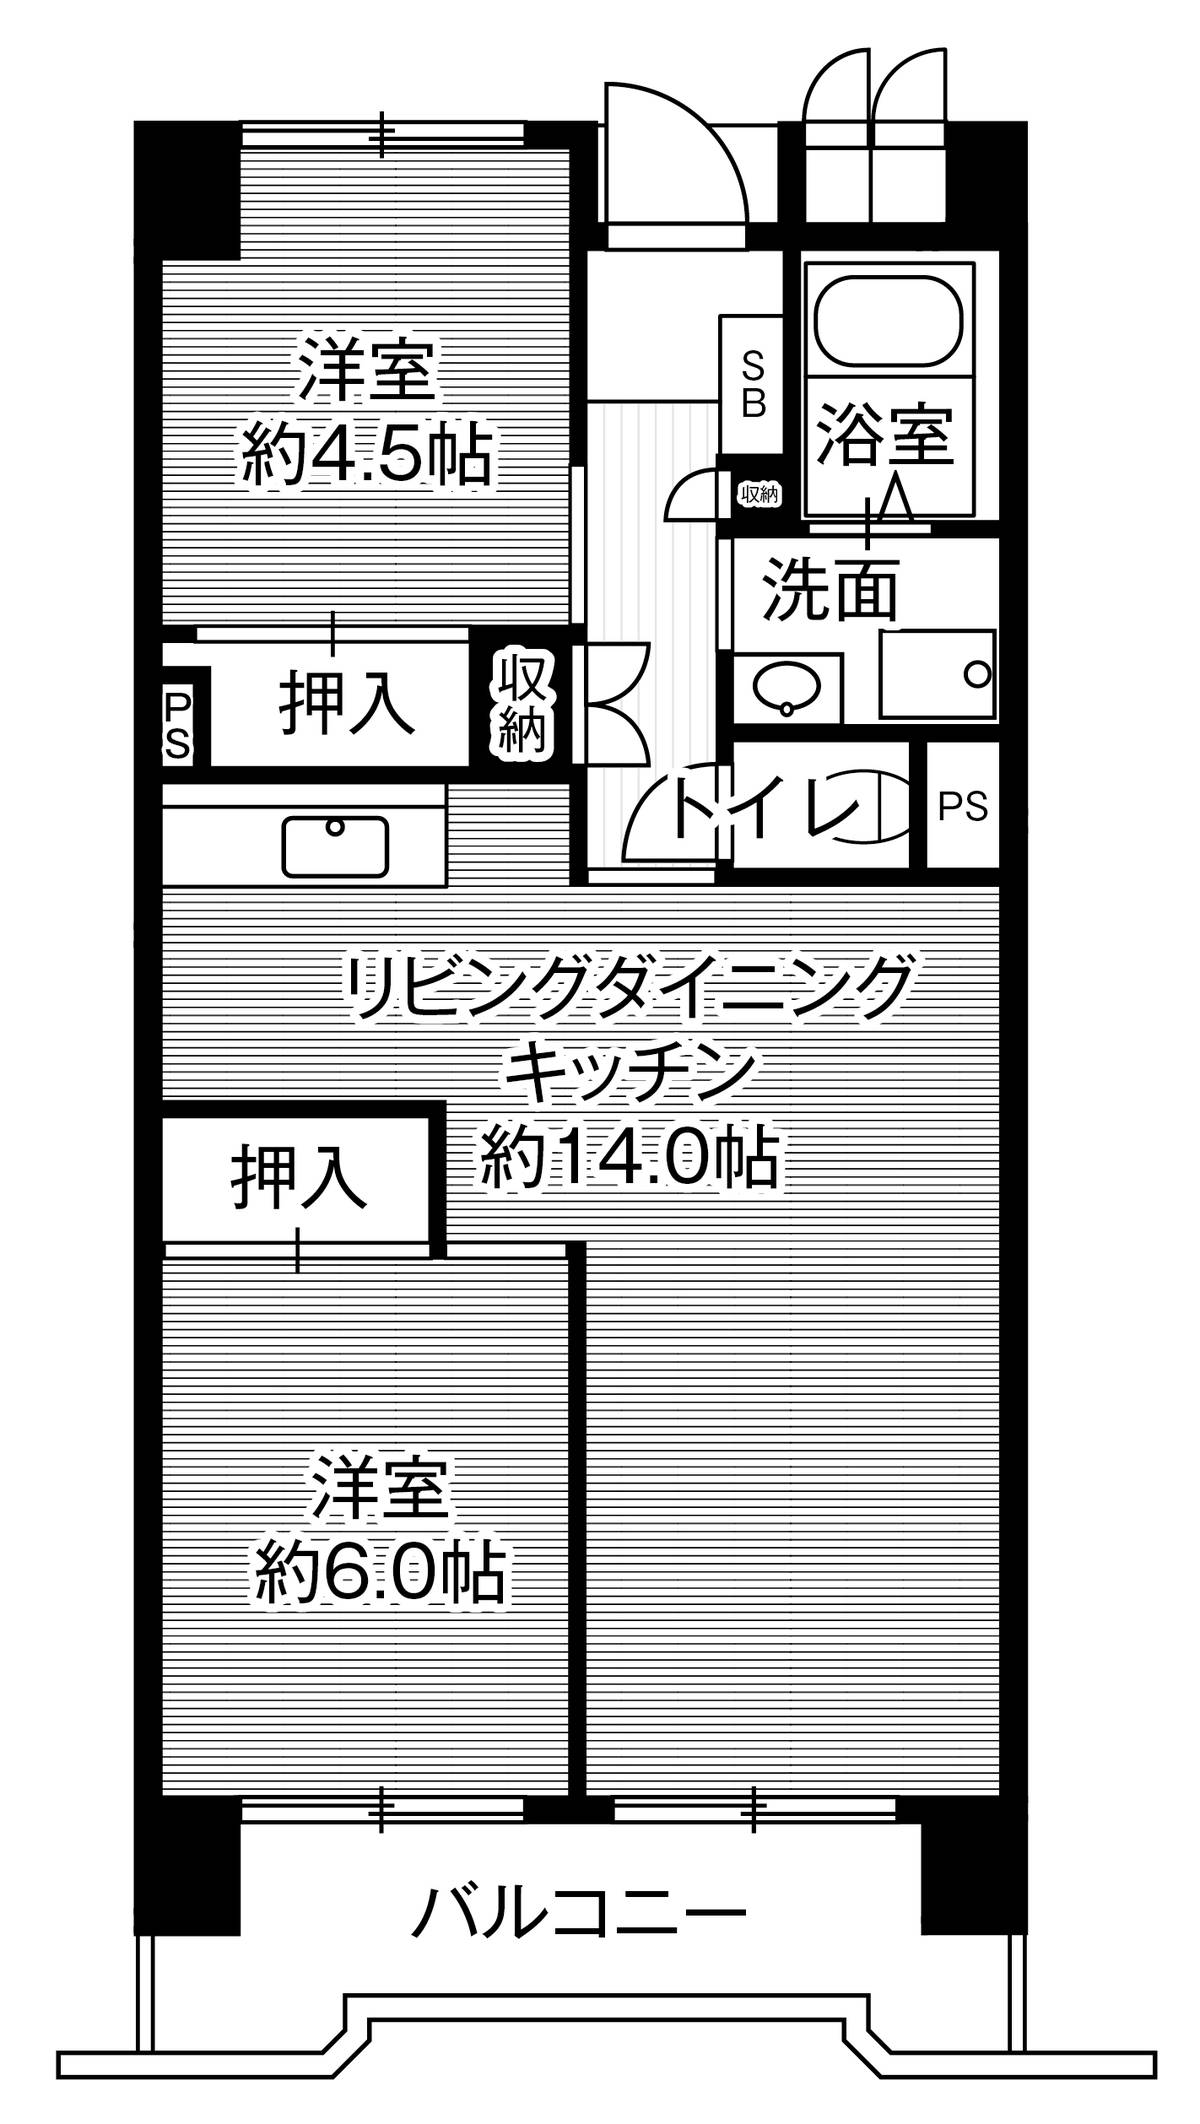 2LDK floorplan of Village House Kasadera Tower in Minami-ku